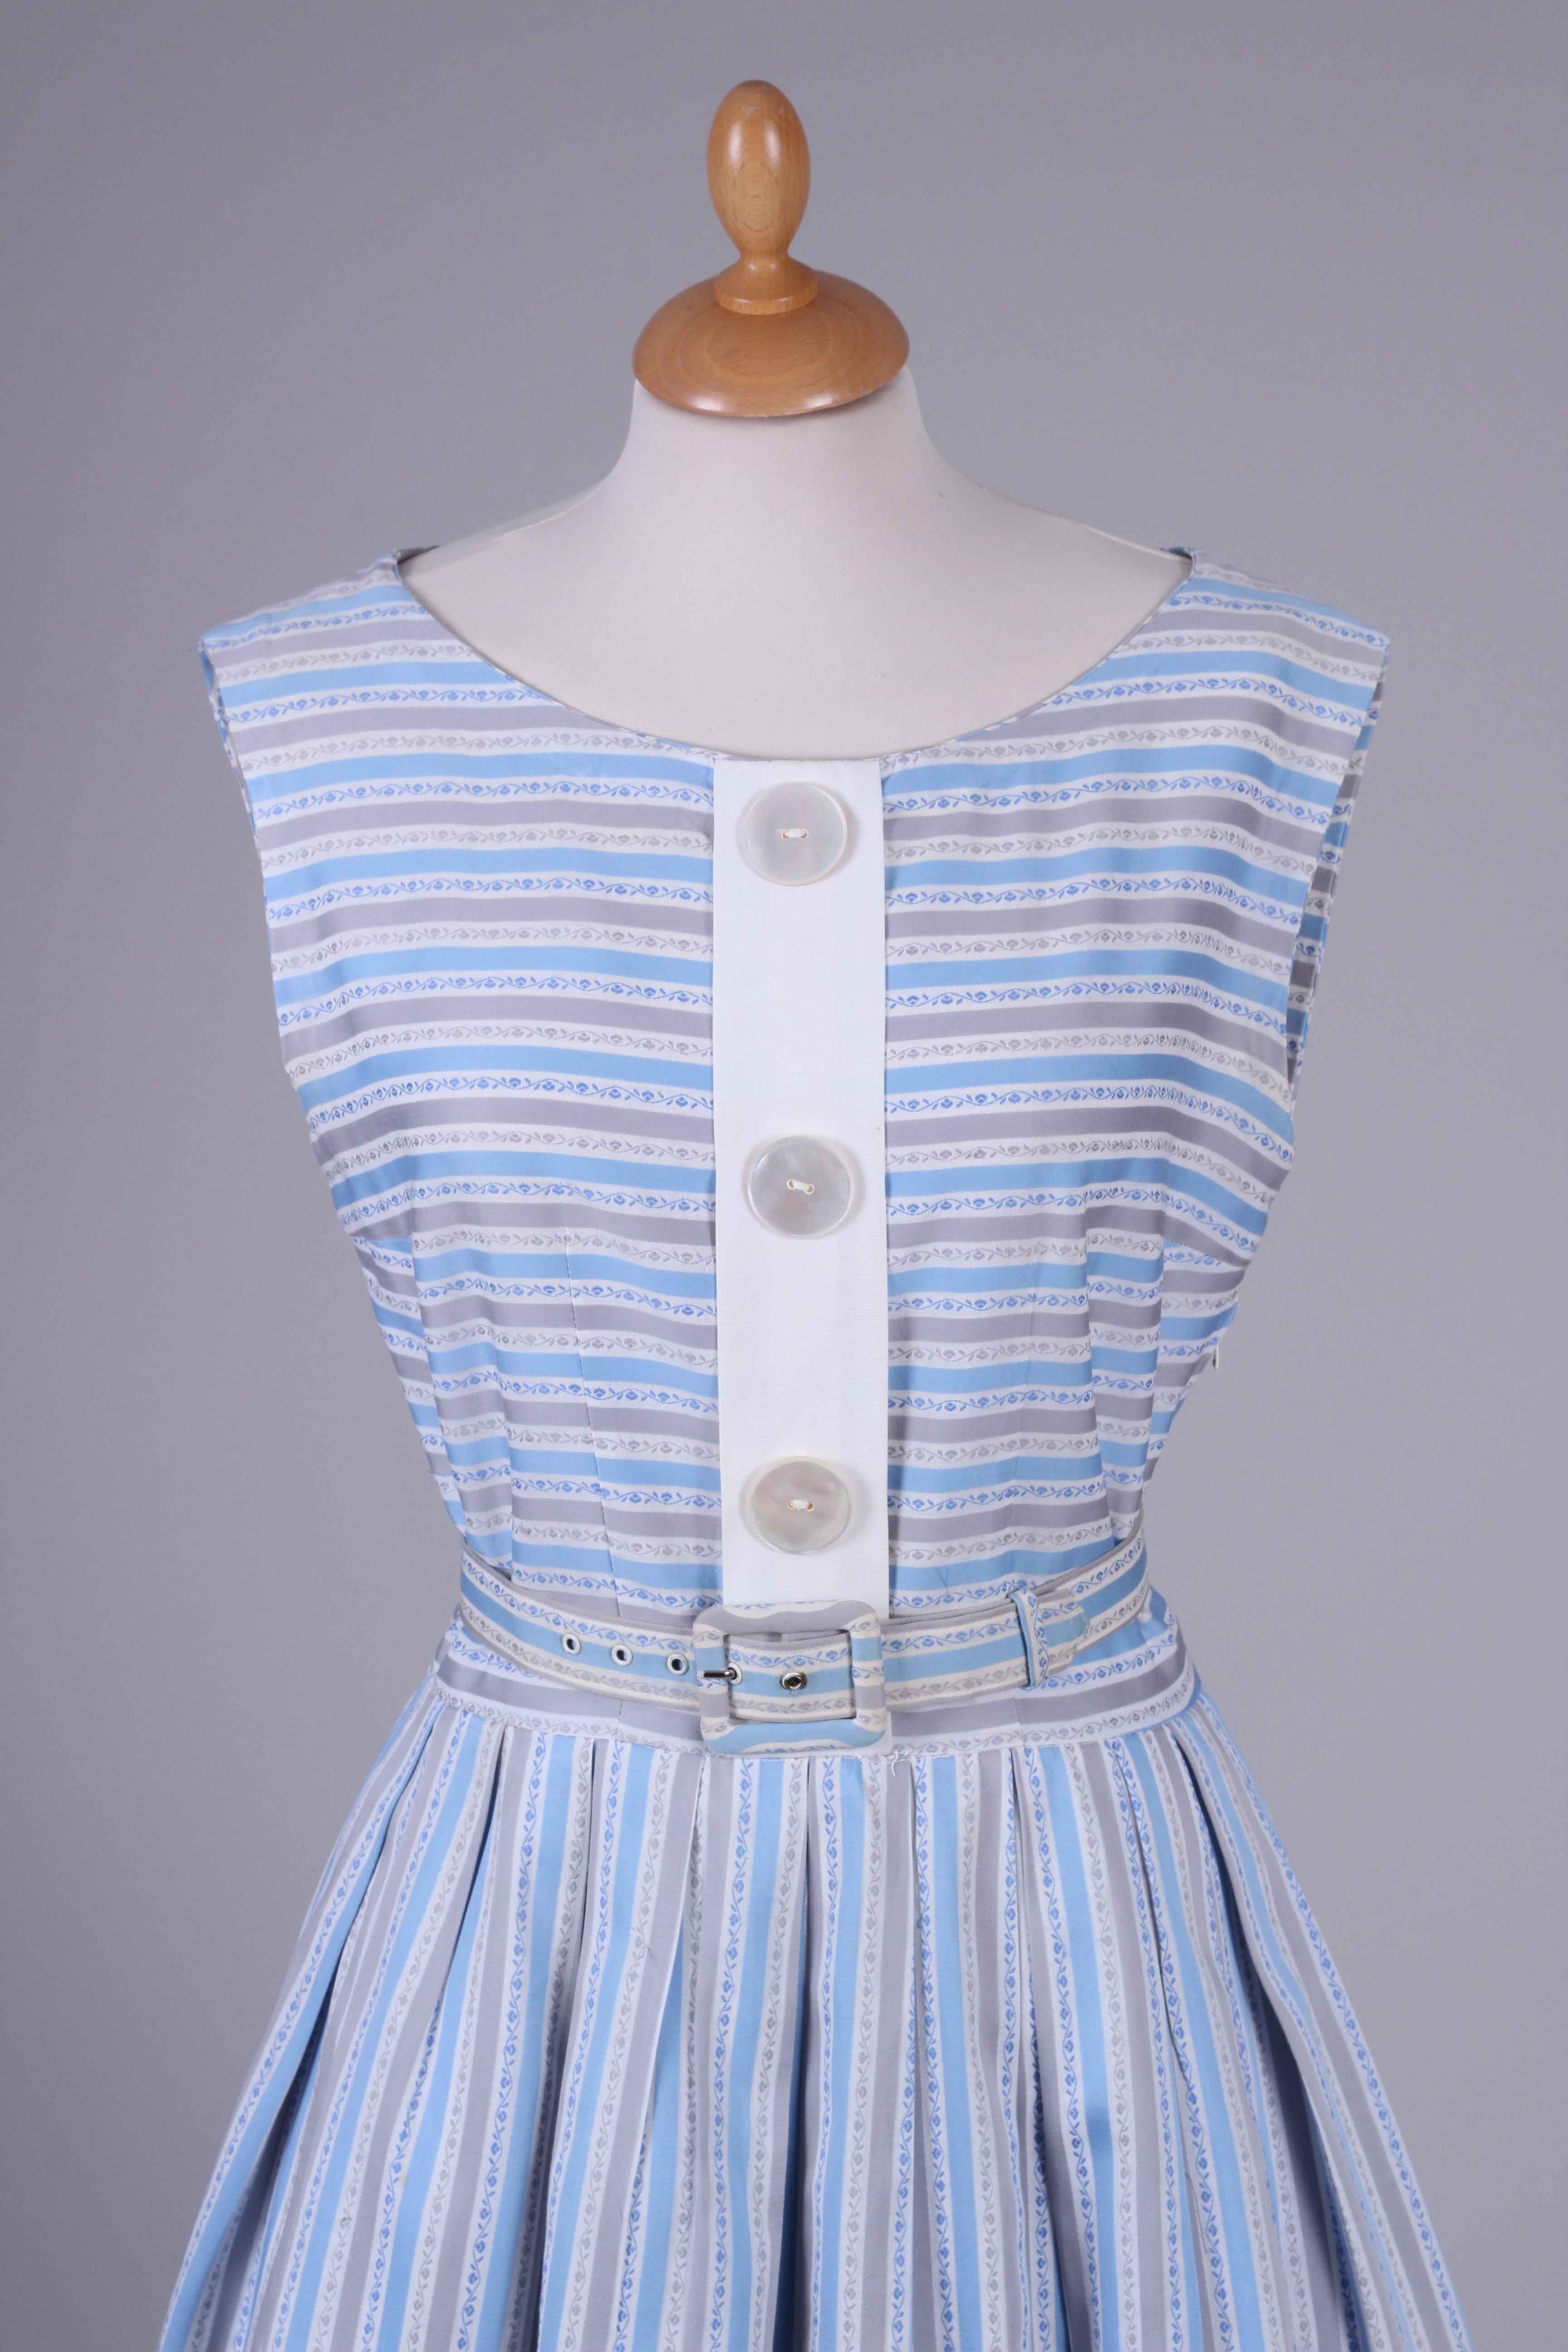 Sims Model sommerkjole 1950. M